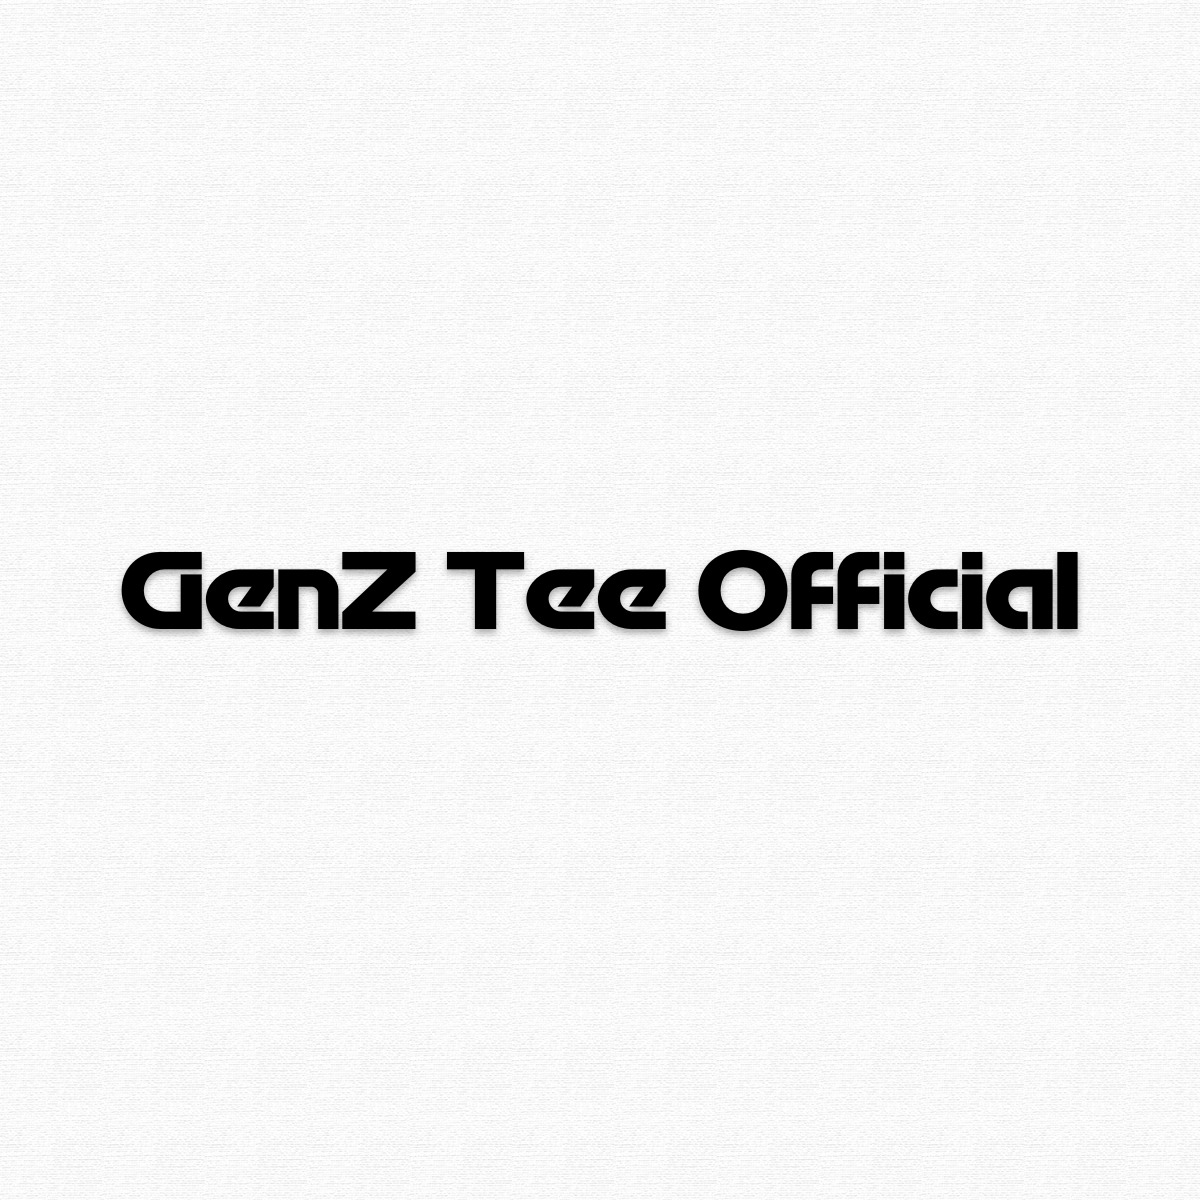 GenZ - Tee Official